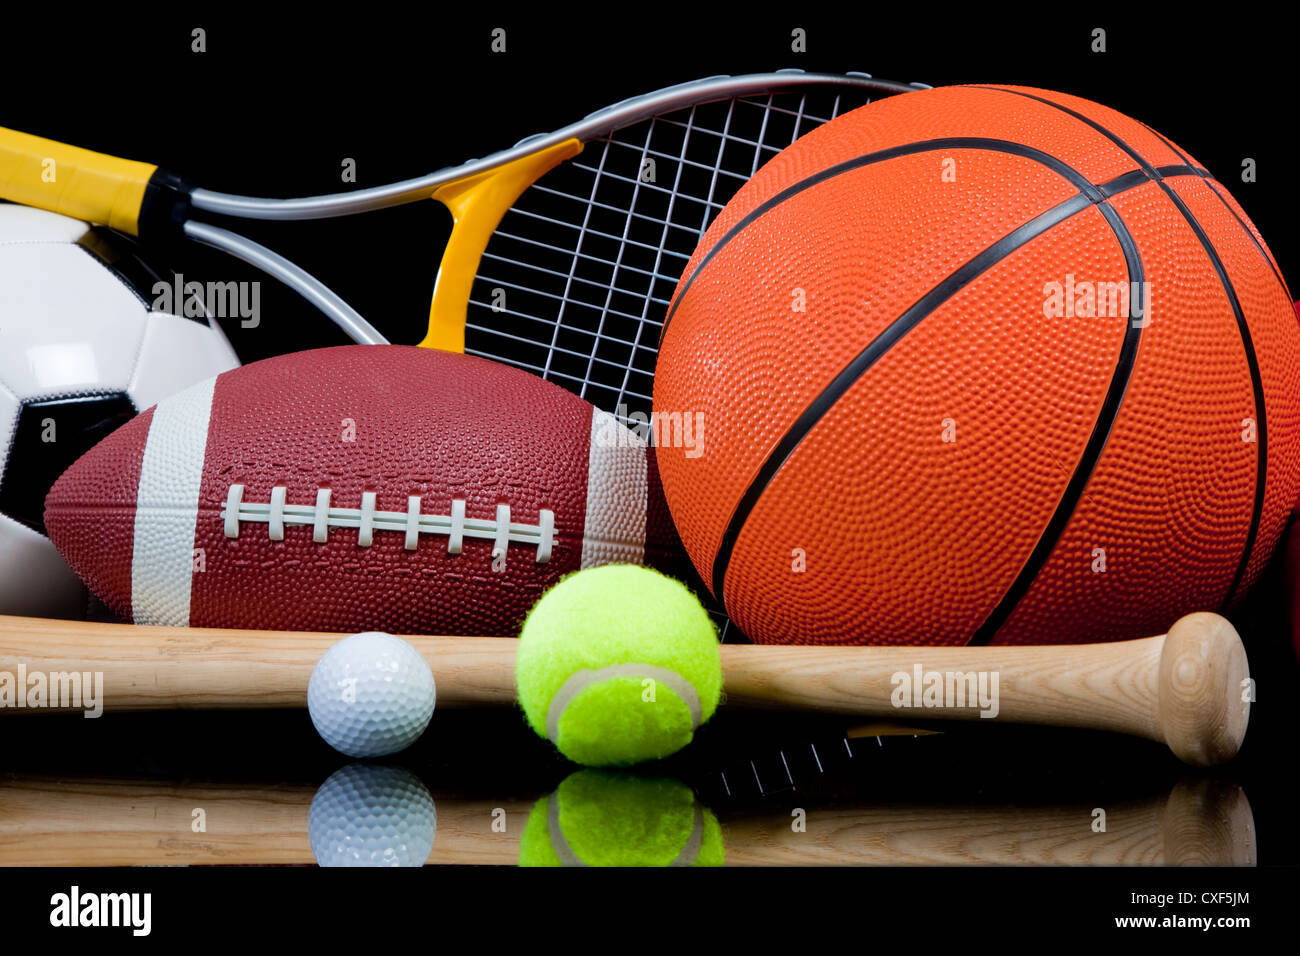 Varie attrezzature sportive su sfondo nero Foto Stock